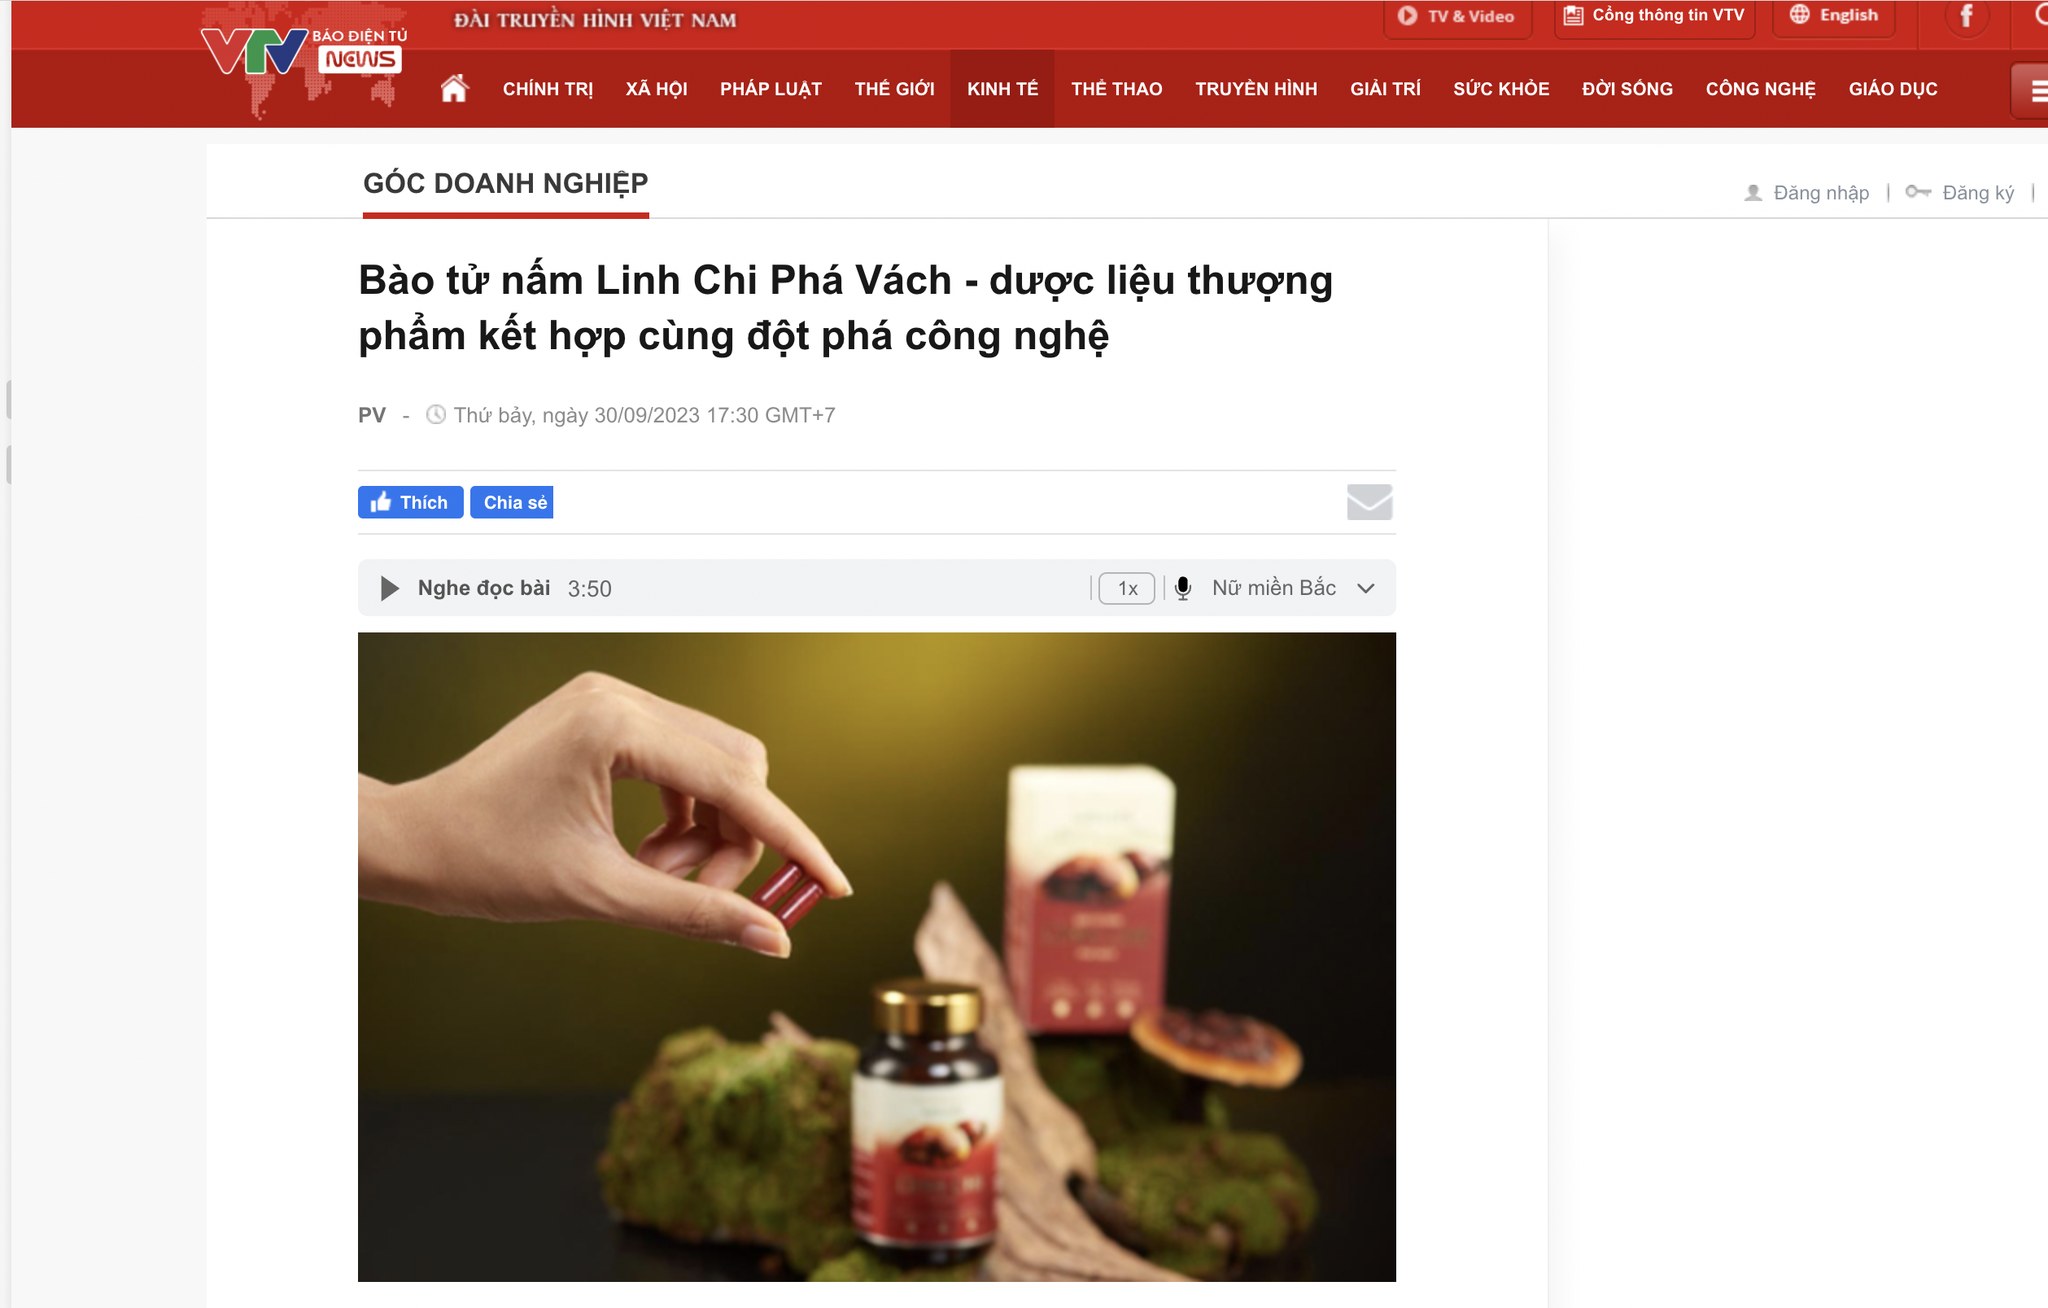 VTV đưa tin: "Siêu phẩm" tại Dstore - Bào tử nấm Linh Chi Phá Vách - dược liệu thượng phẩm kết hợp cùng đột phá công nghệ